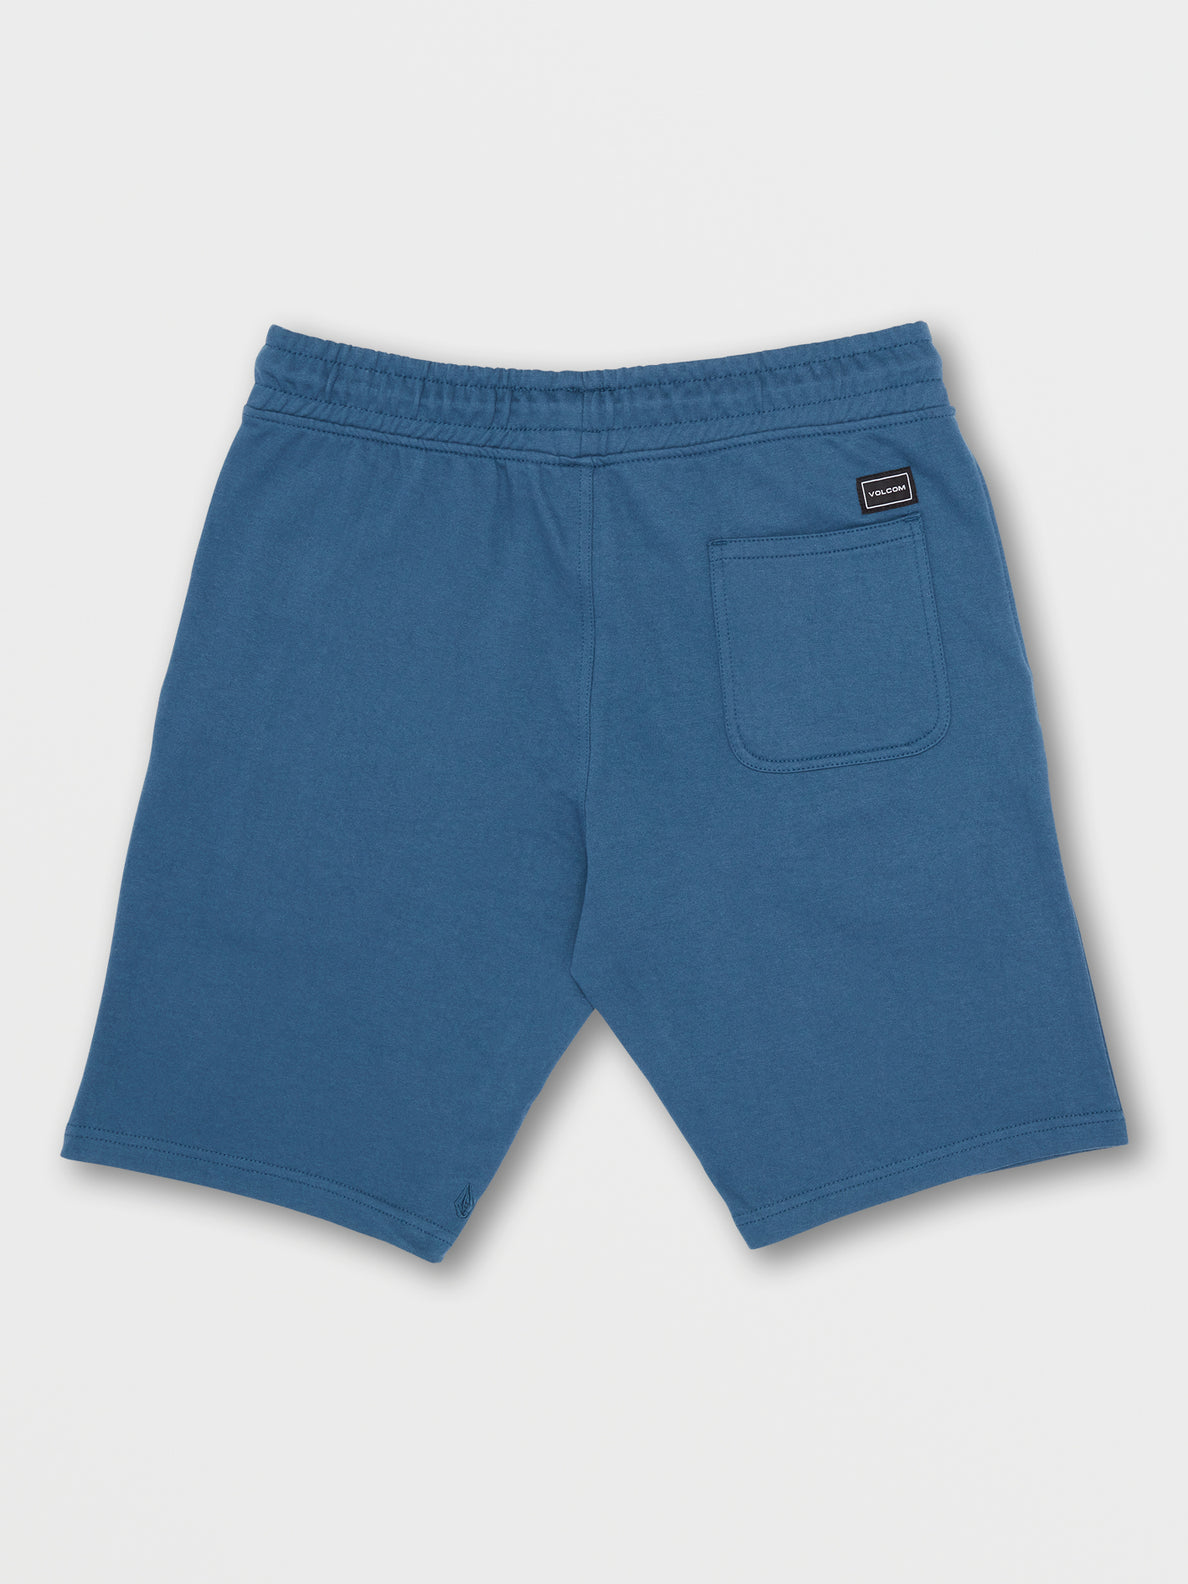 Roundabout Fleece Shorts - Smokey Blue